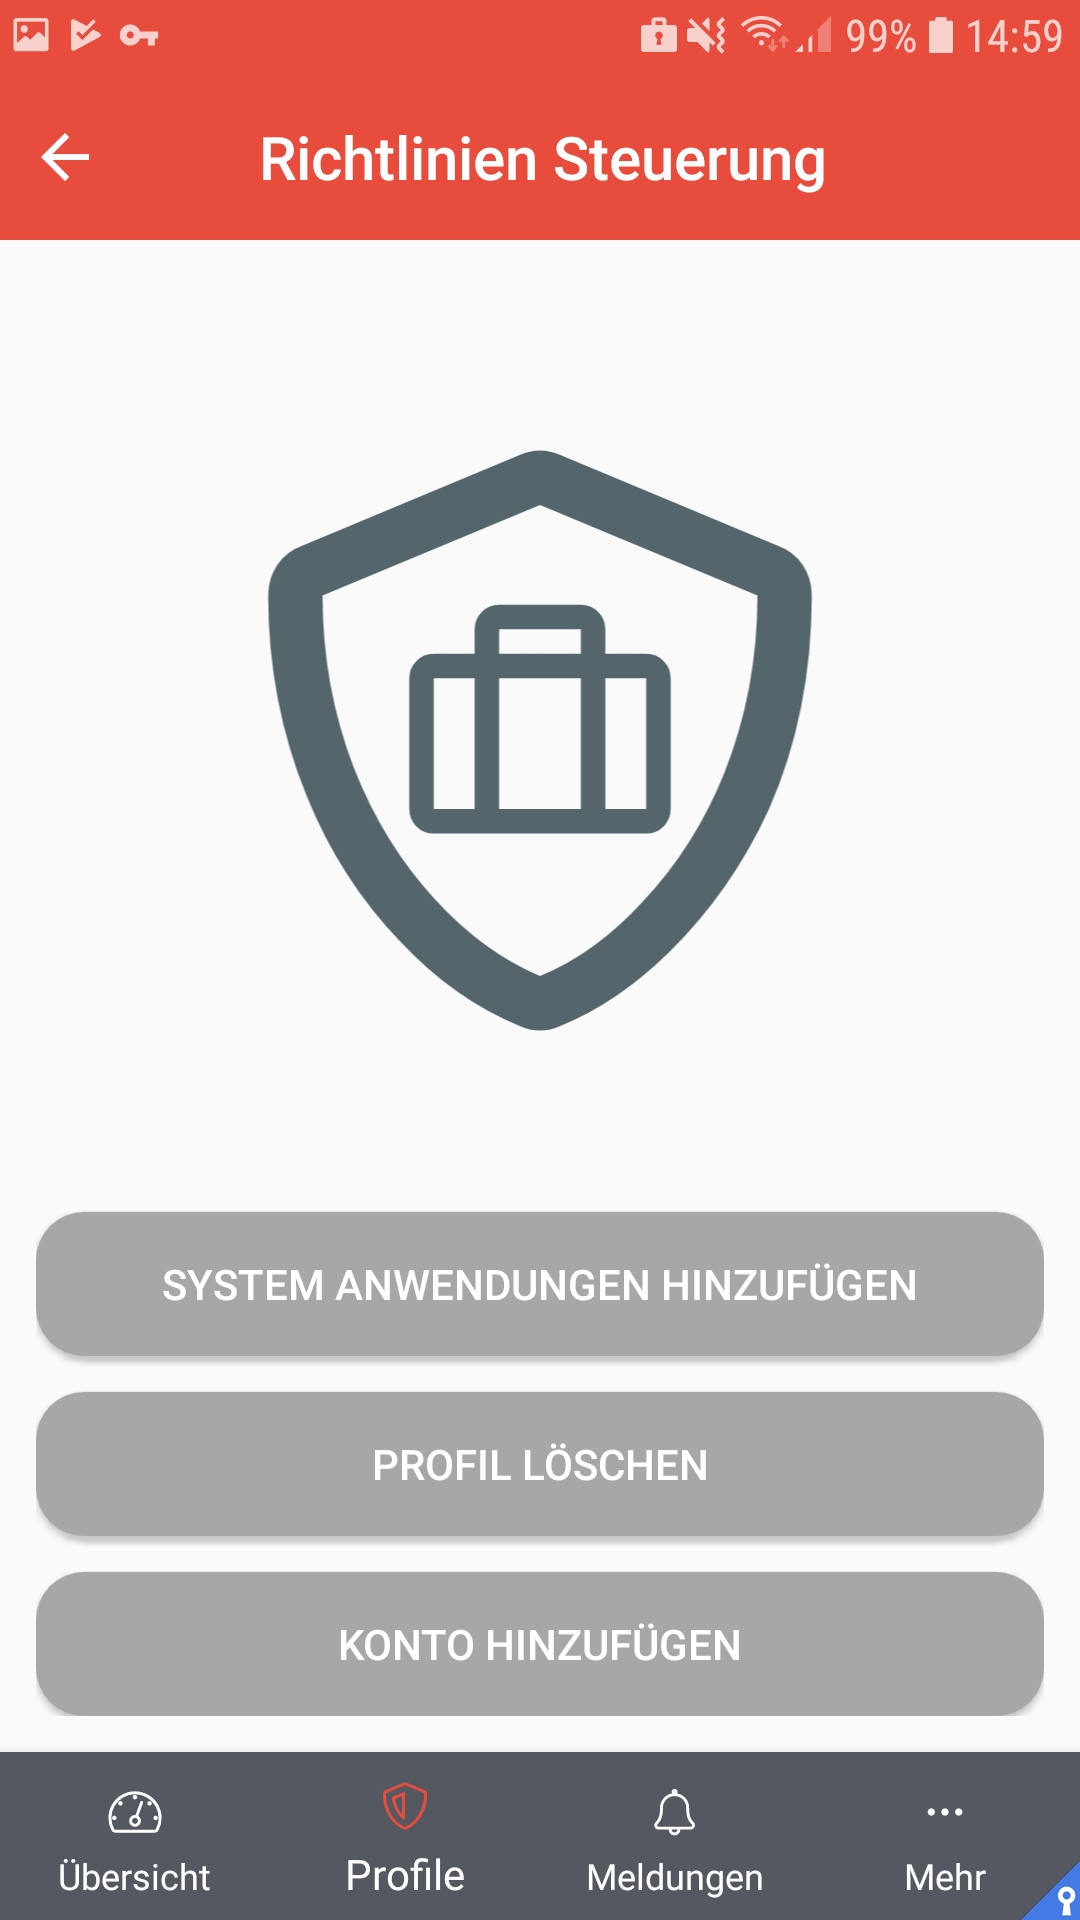 MS Android v1-3-0 Profile Arbeitsprofile Richtlinienverwaltung.jpg